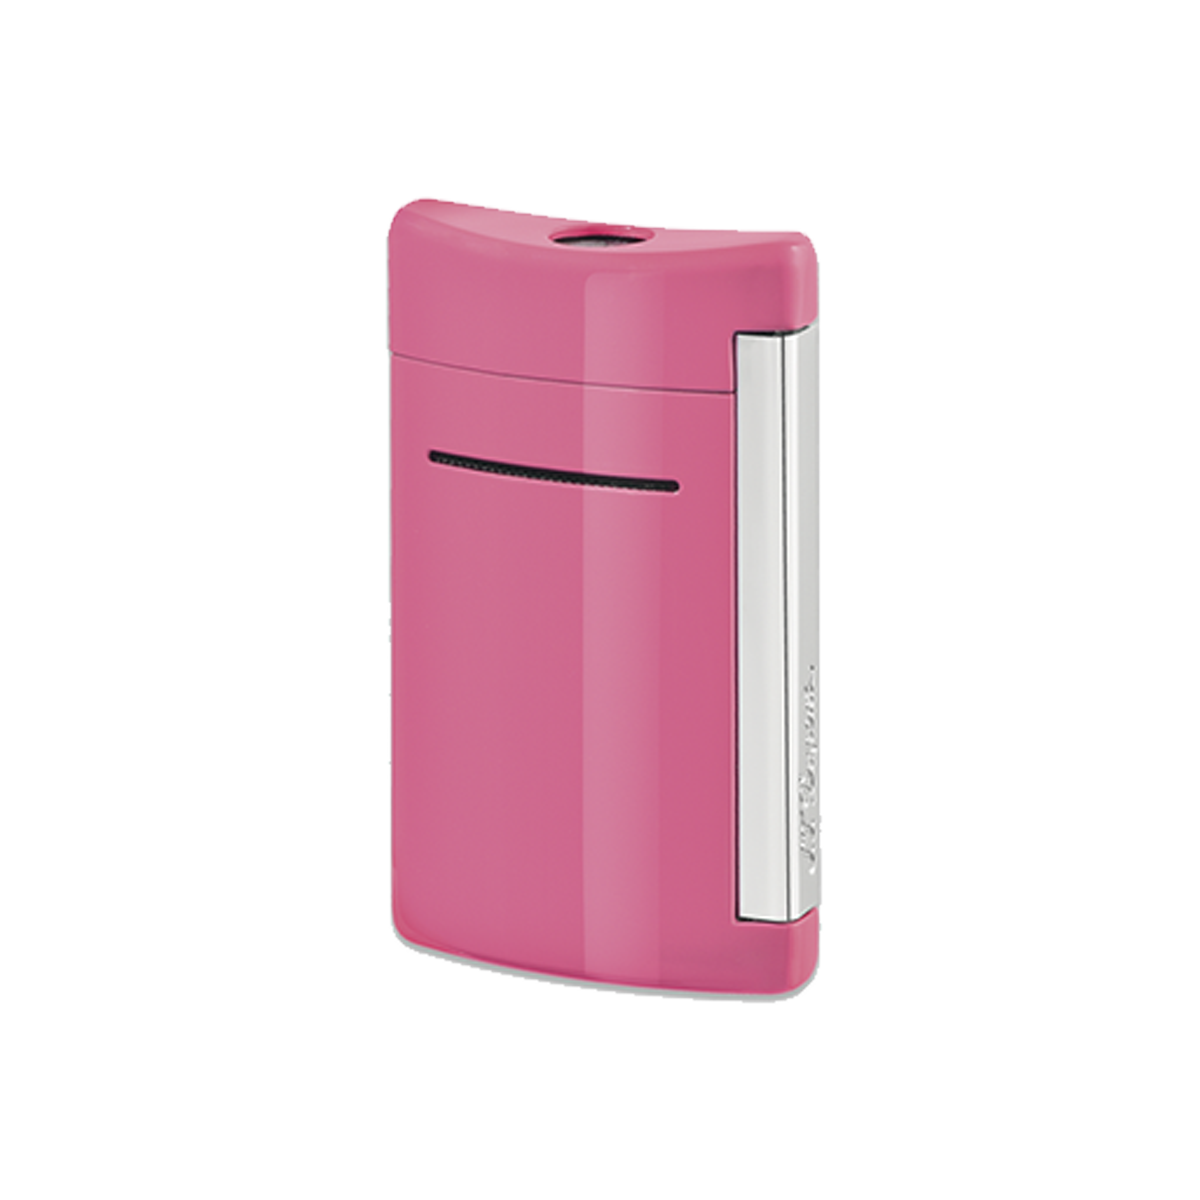 Зажигалка Minijet 10065 Цвет Розовый Отделка натуральным лаком и хромом | S.T. Dupont